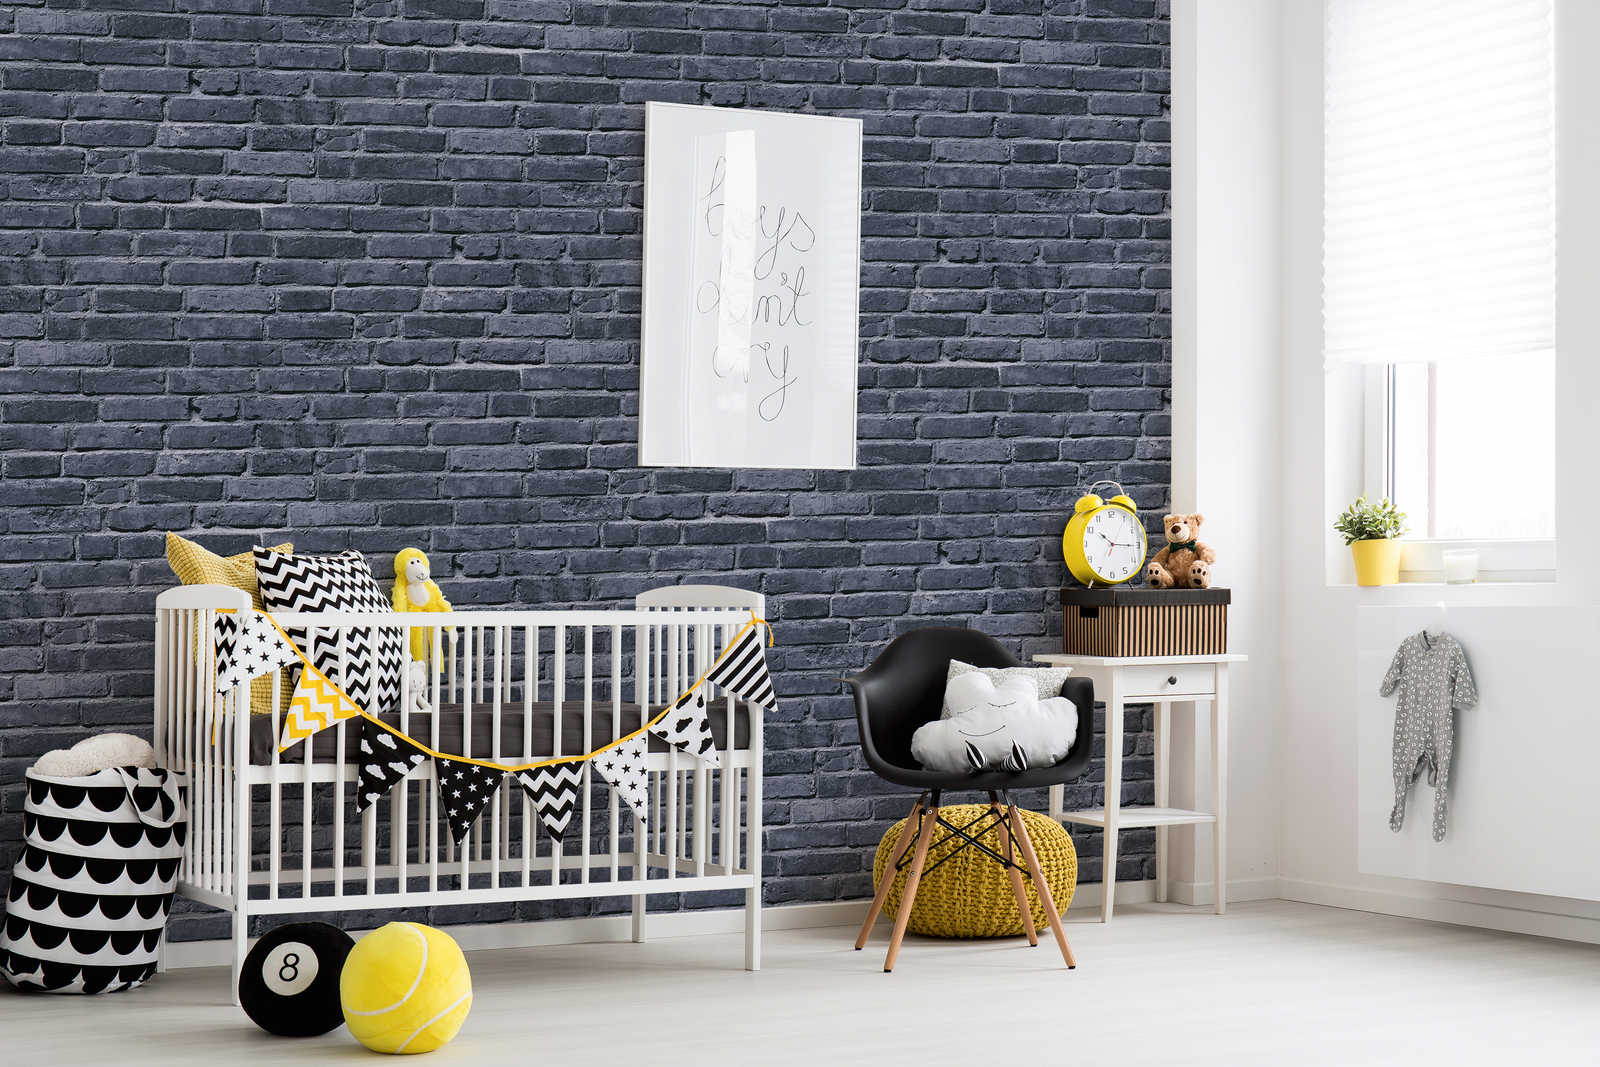             Papier peint chambre enfant imitation pierre - noir, gris
        